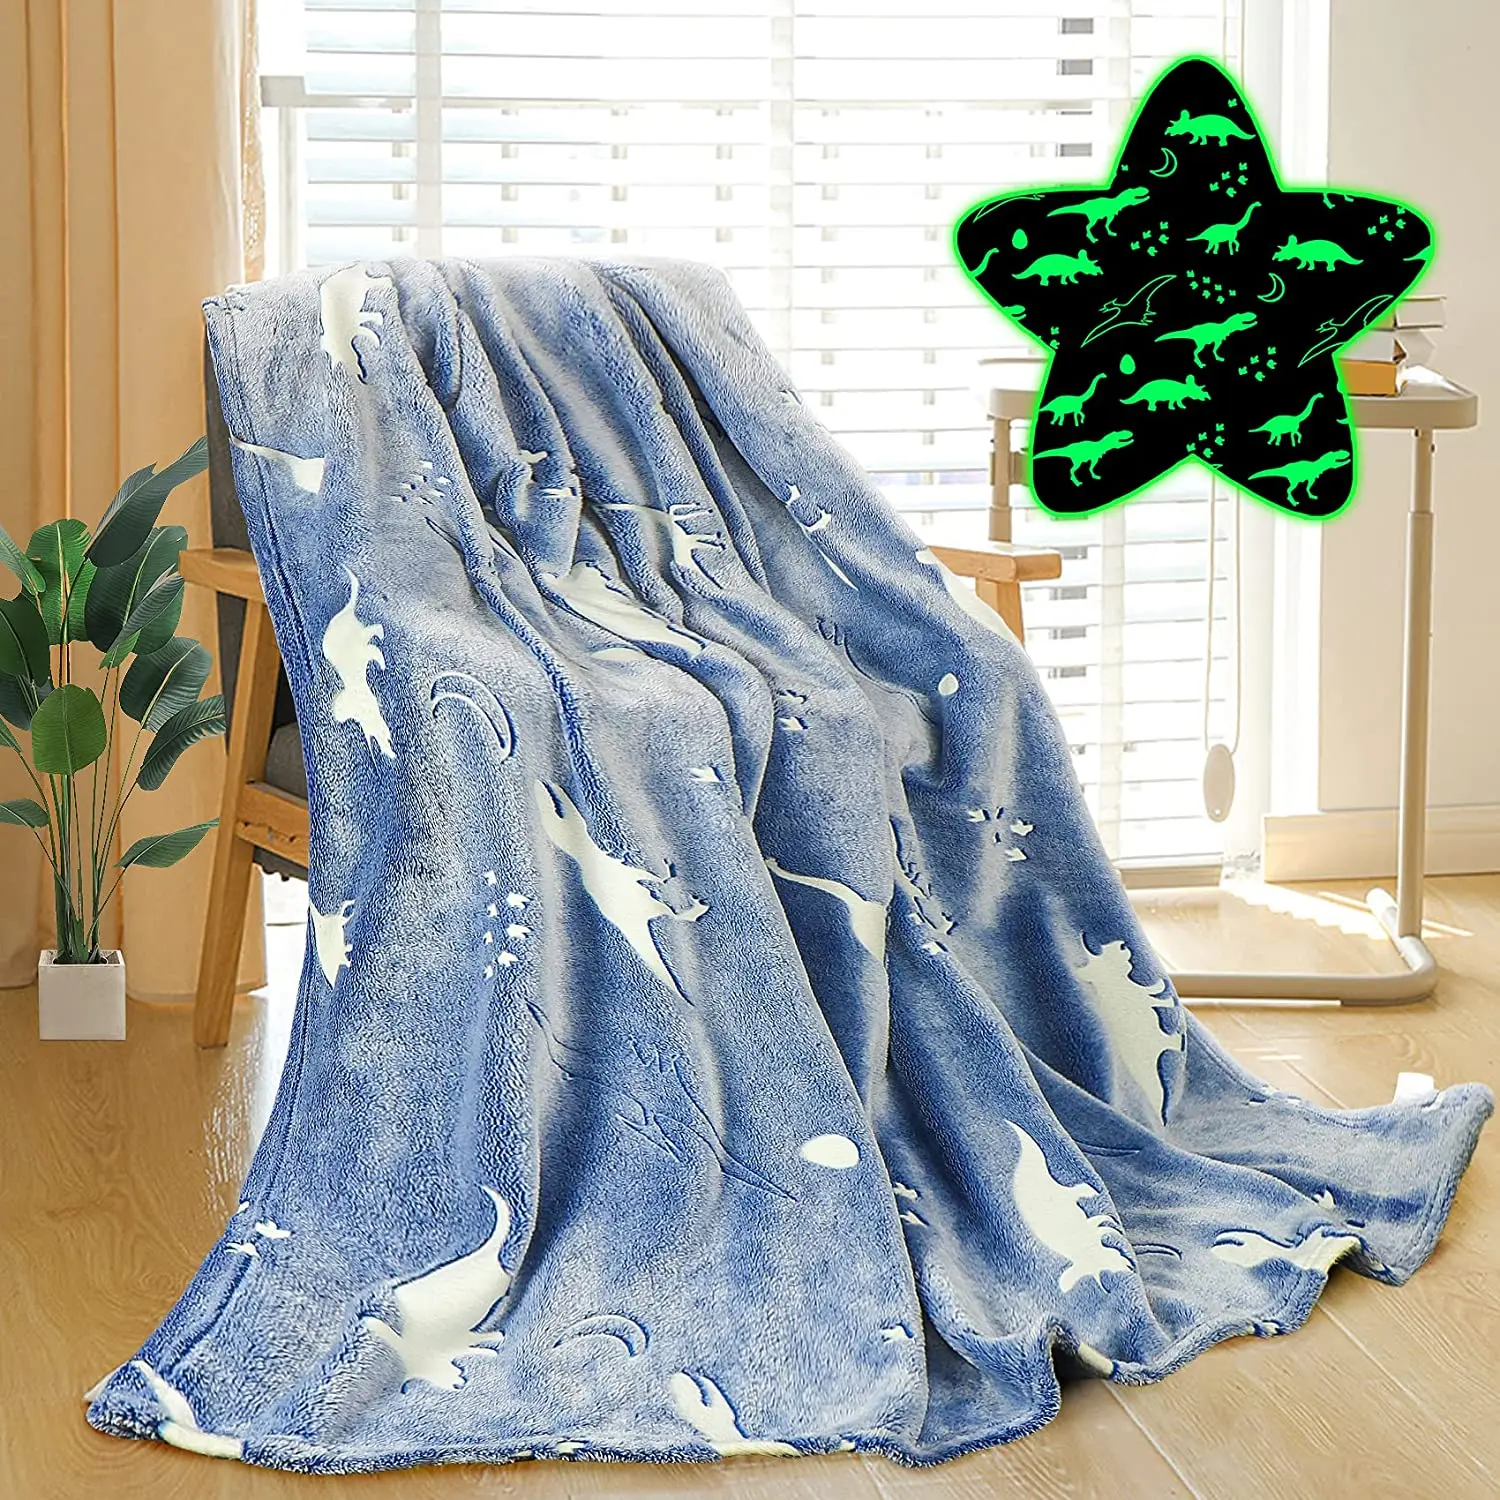 

Фланелевое светящееся одеяло для мальчиков с синим динозавром для кровати, дивана, 50X60 дюймов, мягкое теплое пушистое милое одеяло для детей